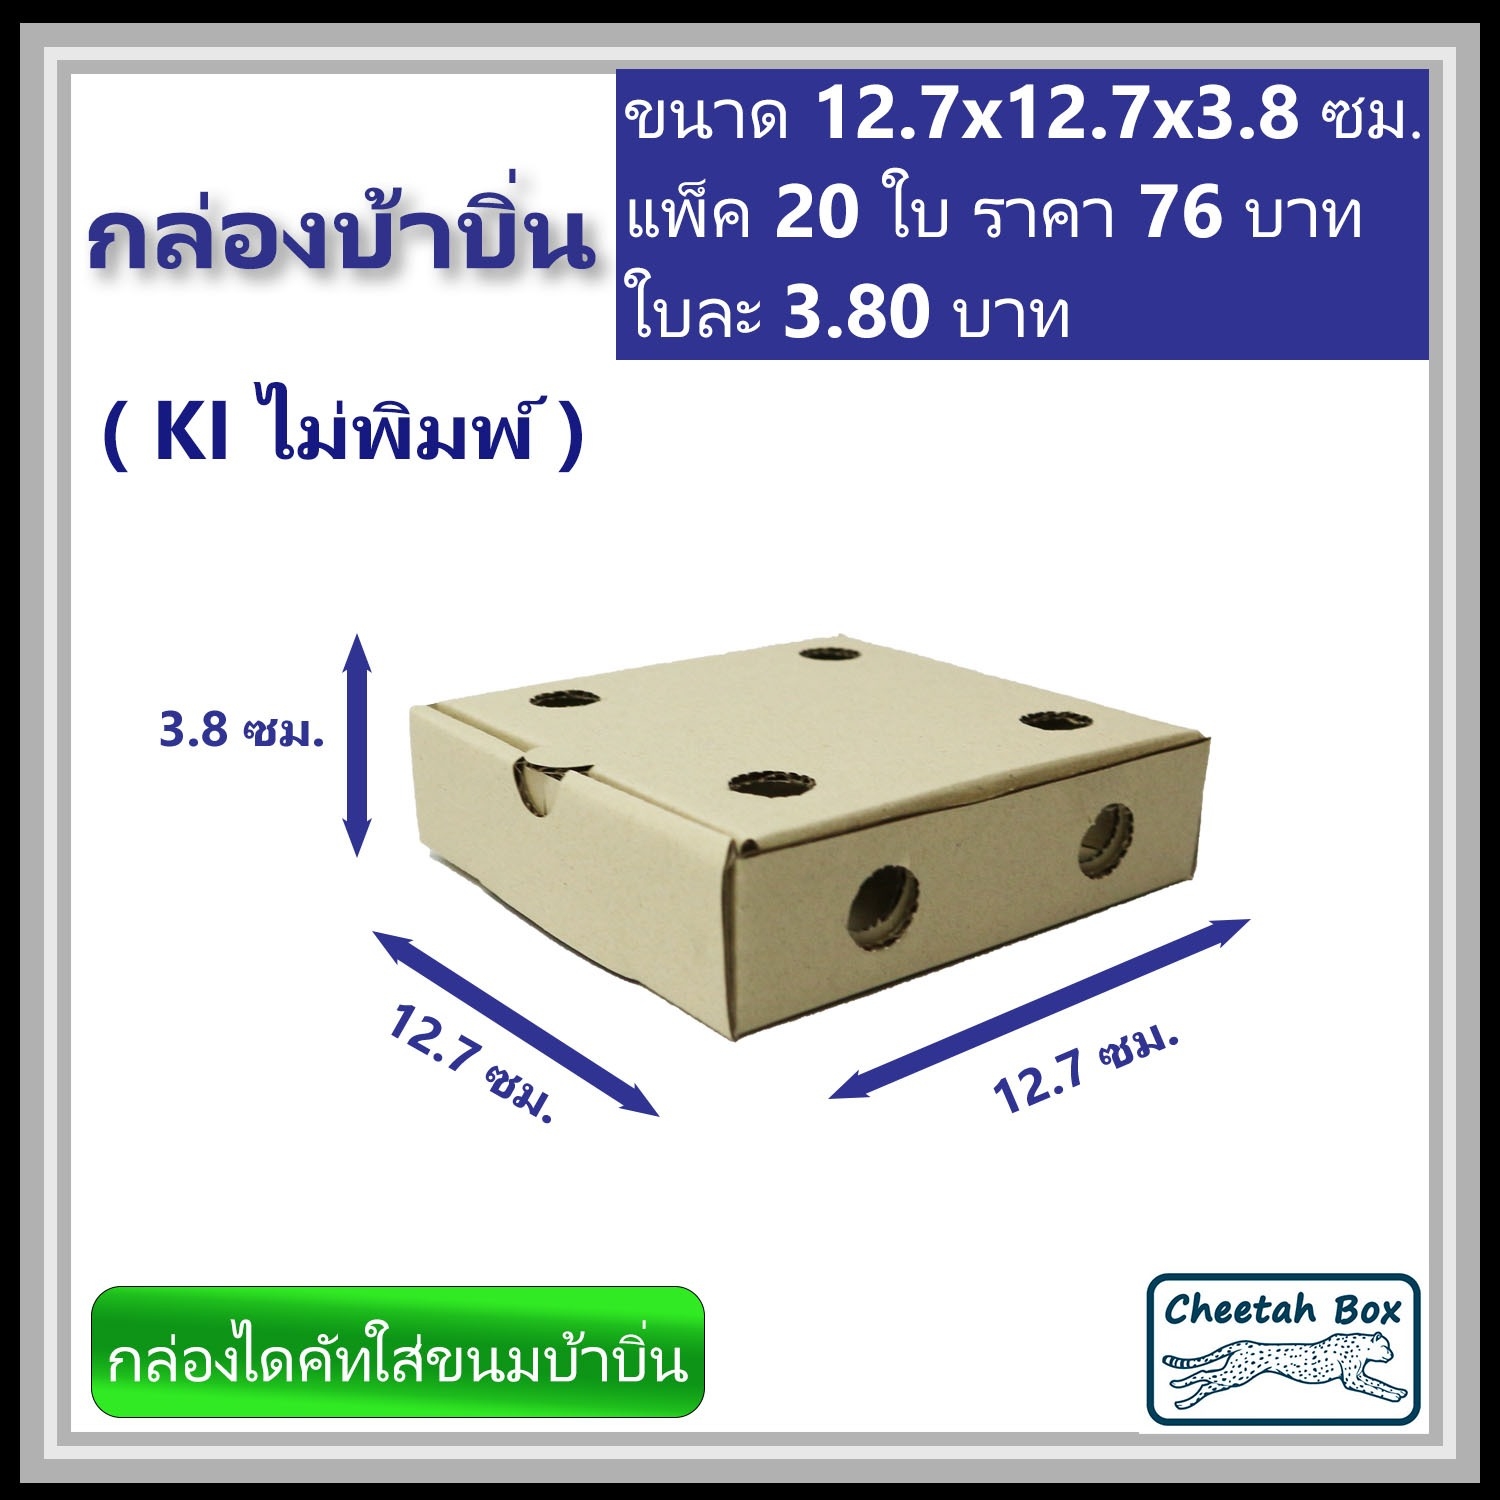 กล่องกล่องบ้าบิ่น 5 นิ้ว ไม่พิมพ์ (Die-cut Box) ขนาด 12.7W x 12.7L x 3.8H cm.